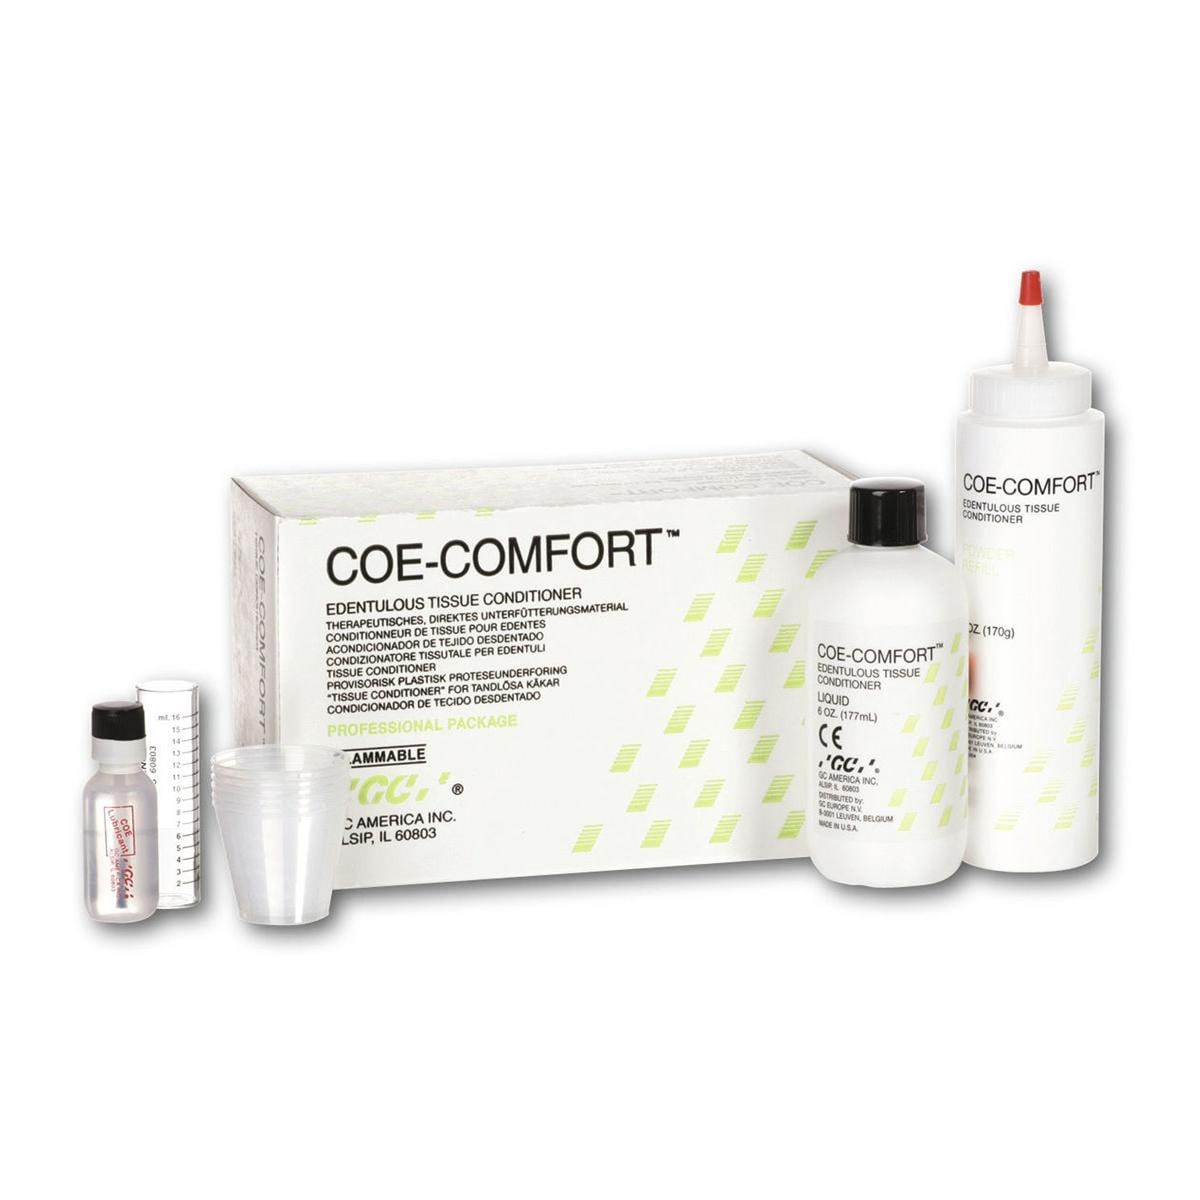 Coe-Comfort - Complete set